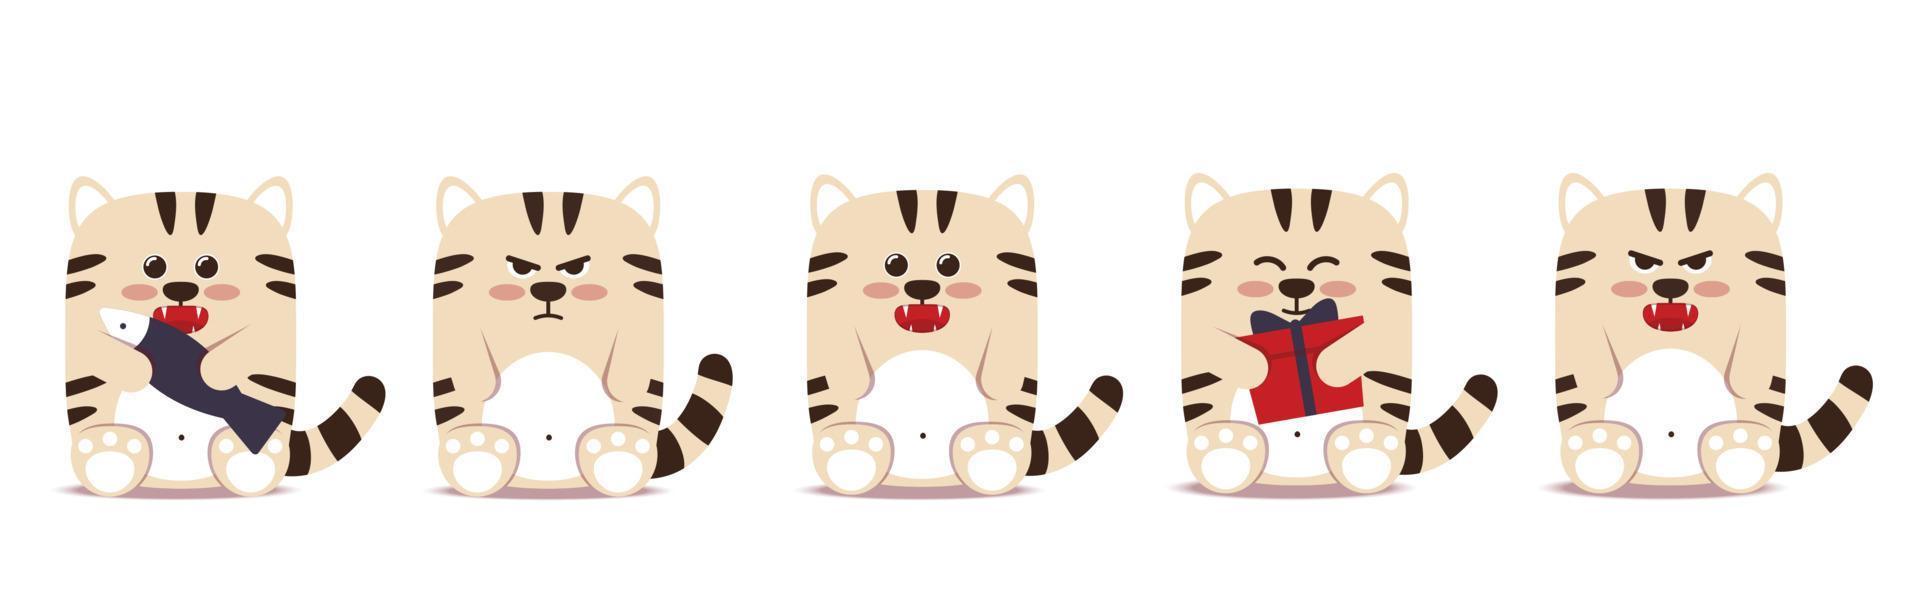 conjunto de gatinhos tigres pequenos em um estilo simples. símbolo animal para o ano novo chinês de 2022. tigre branco mal-humorado com raiva senta-se com um peixe de caixa de presente. para banner, decoração de berçário. ilustração vetorial. vetor